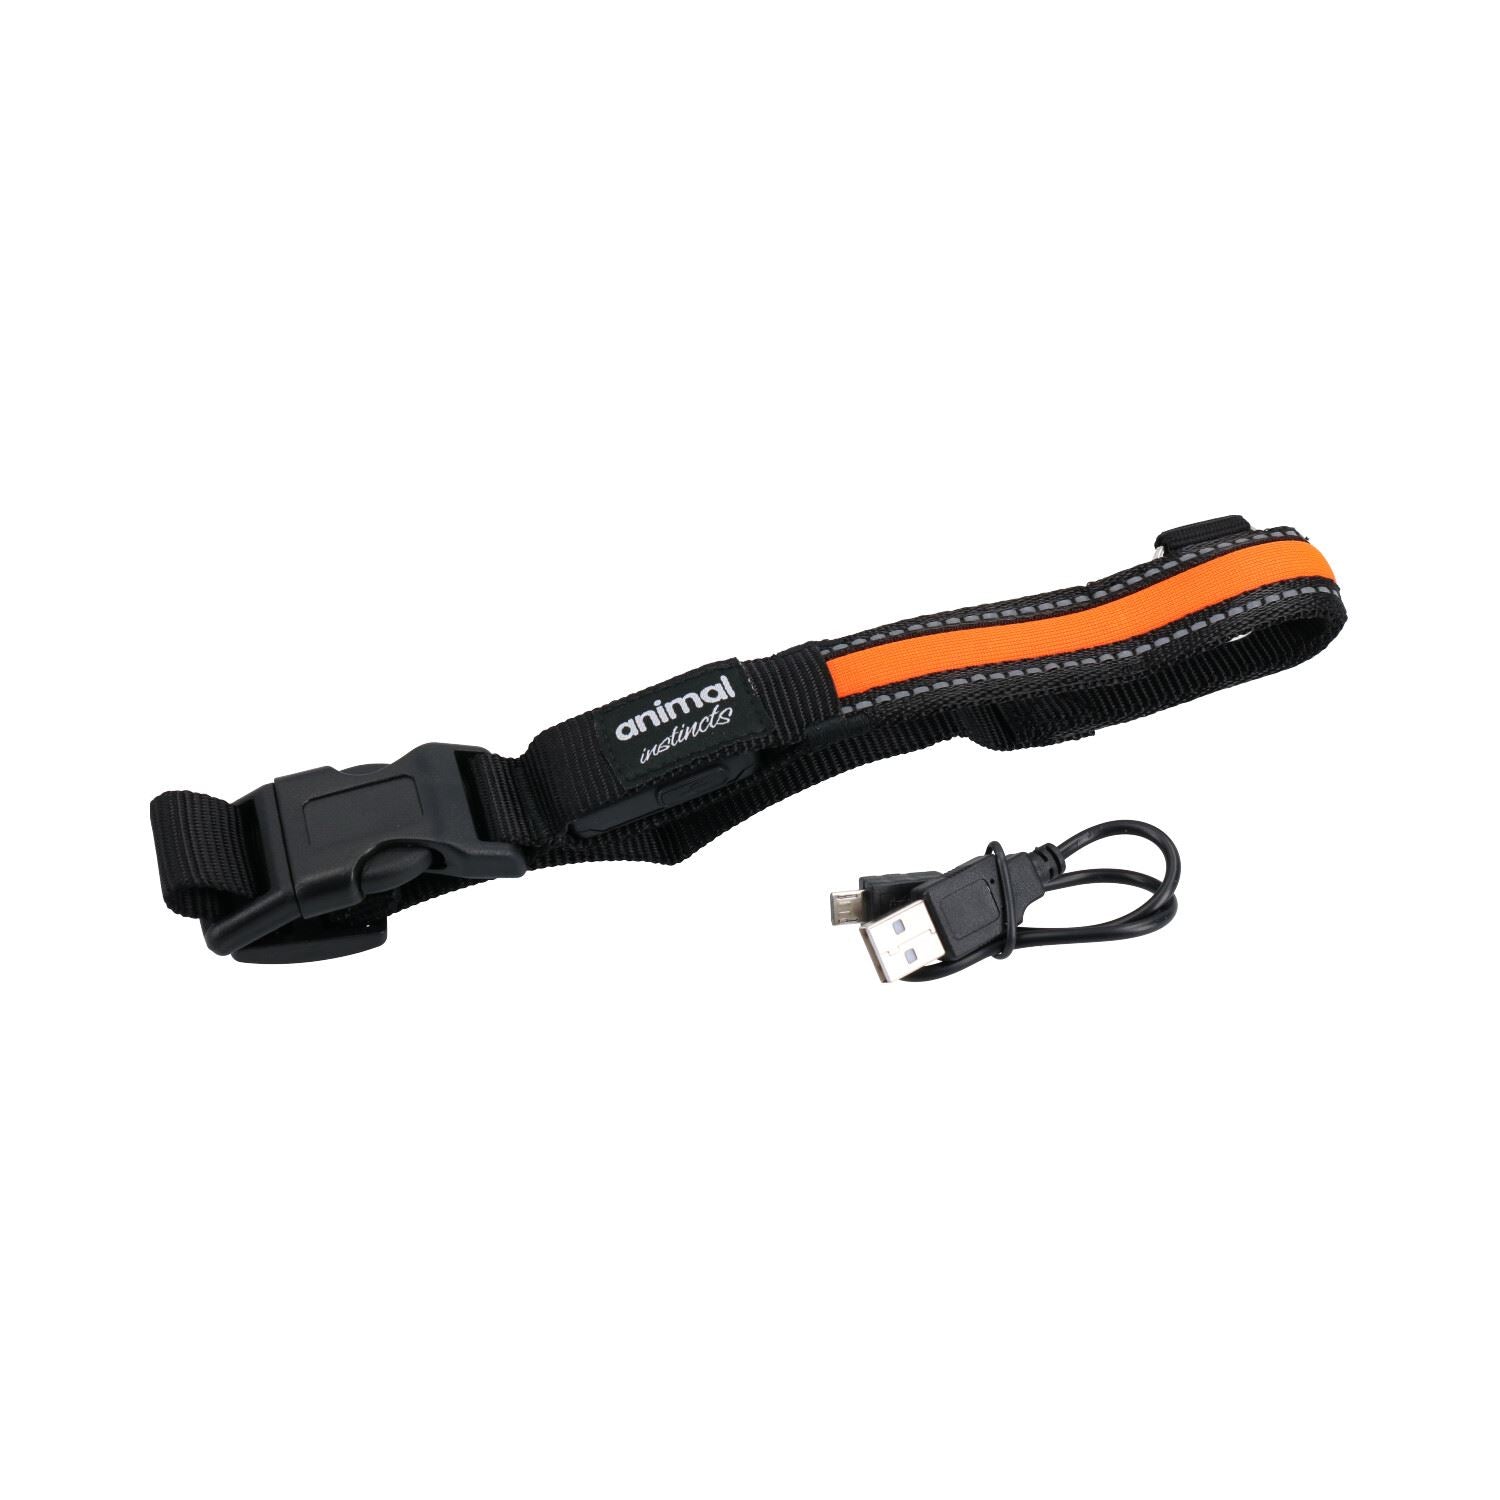 Orange Large Dog Walk Hi-Visibility Rechargeable Flashing Safety Collar 45-63cm